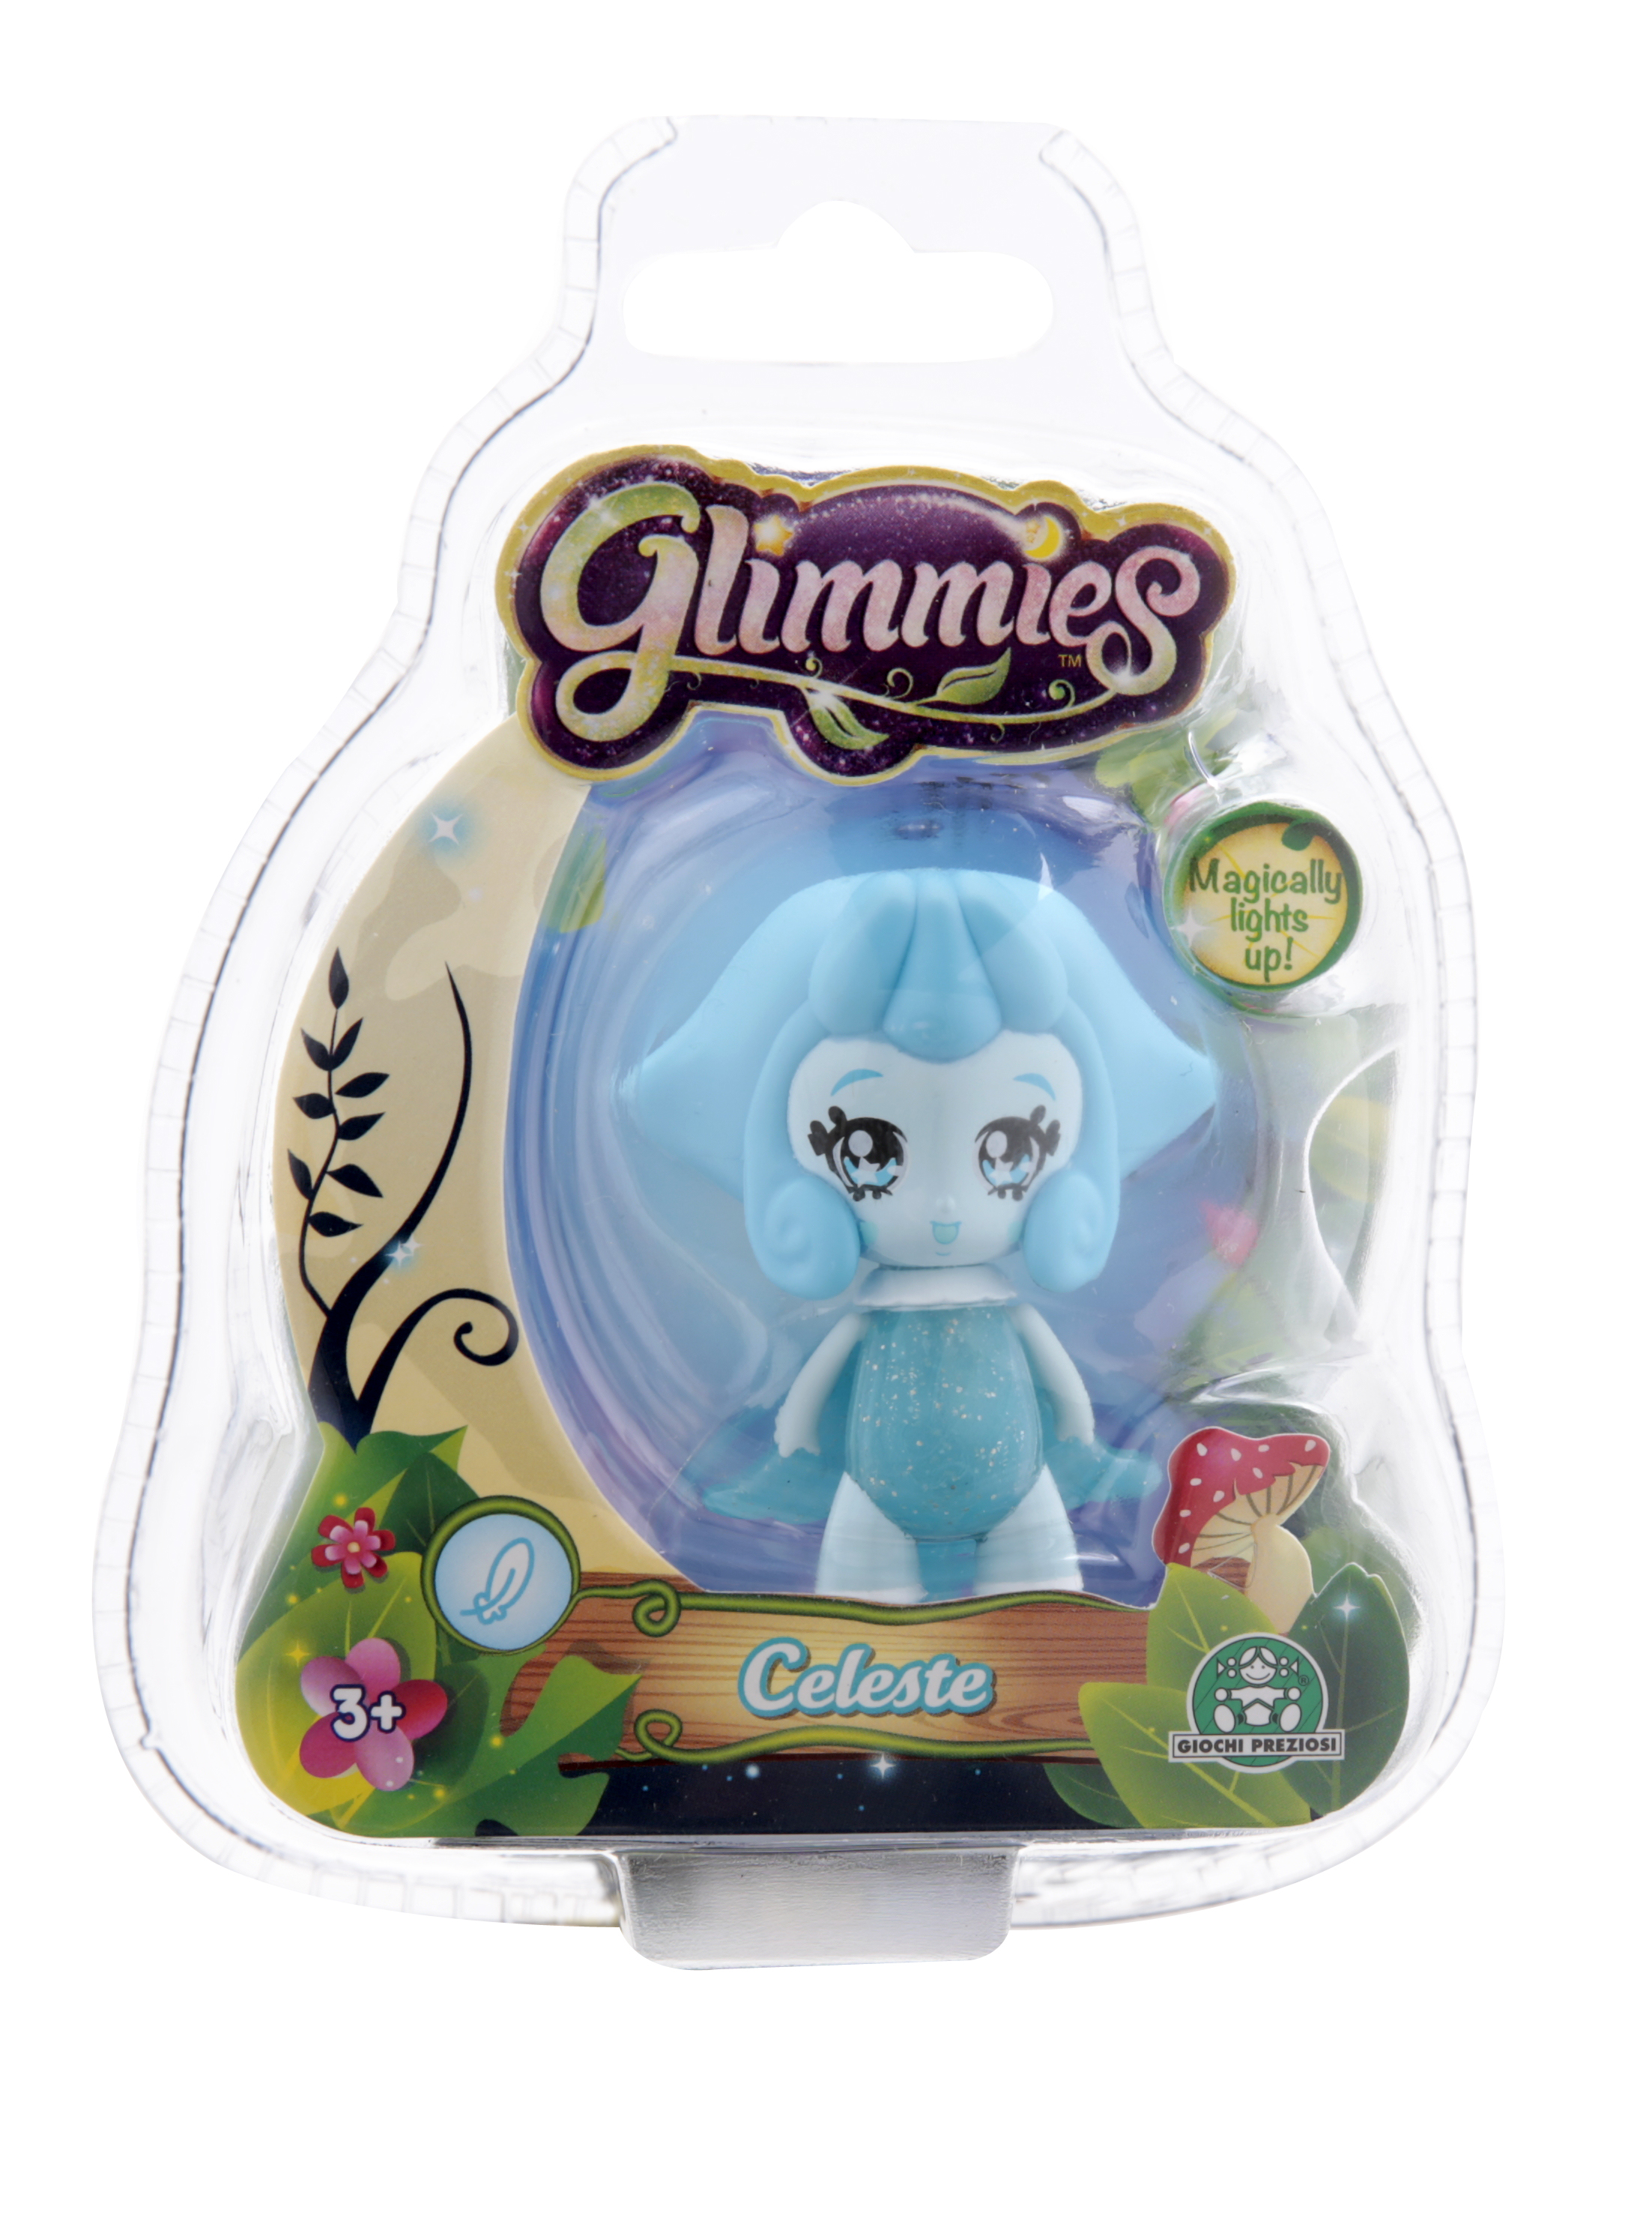 Кукла Glimmies Celeste 6 см, в блистере